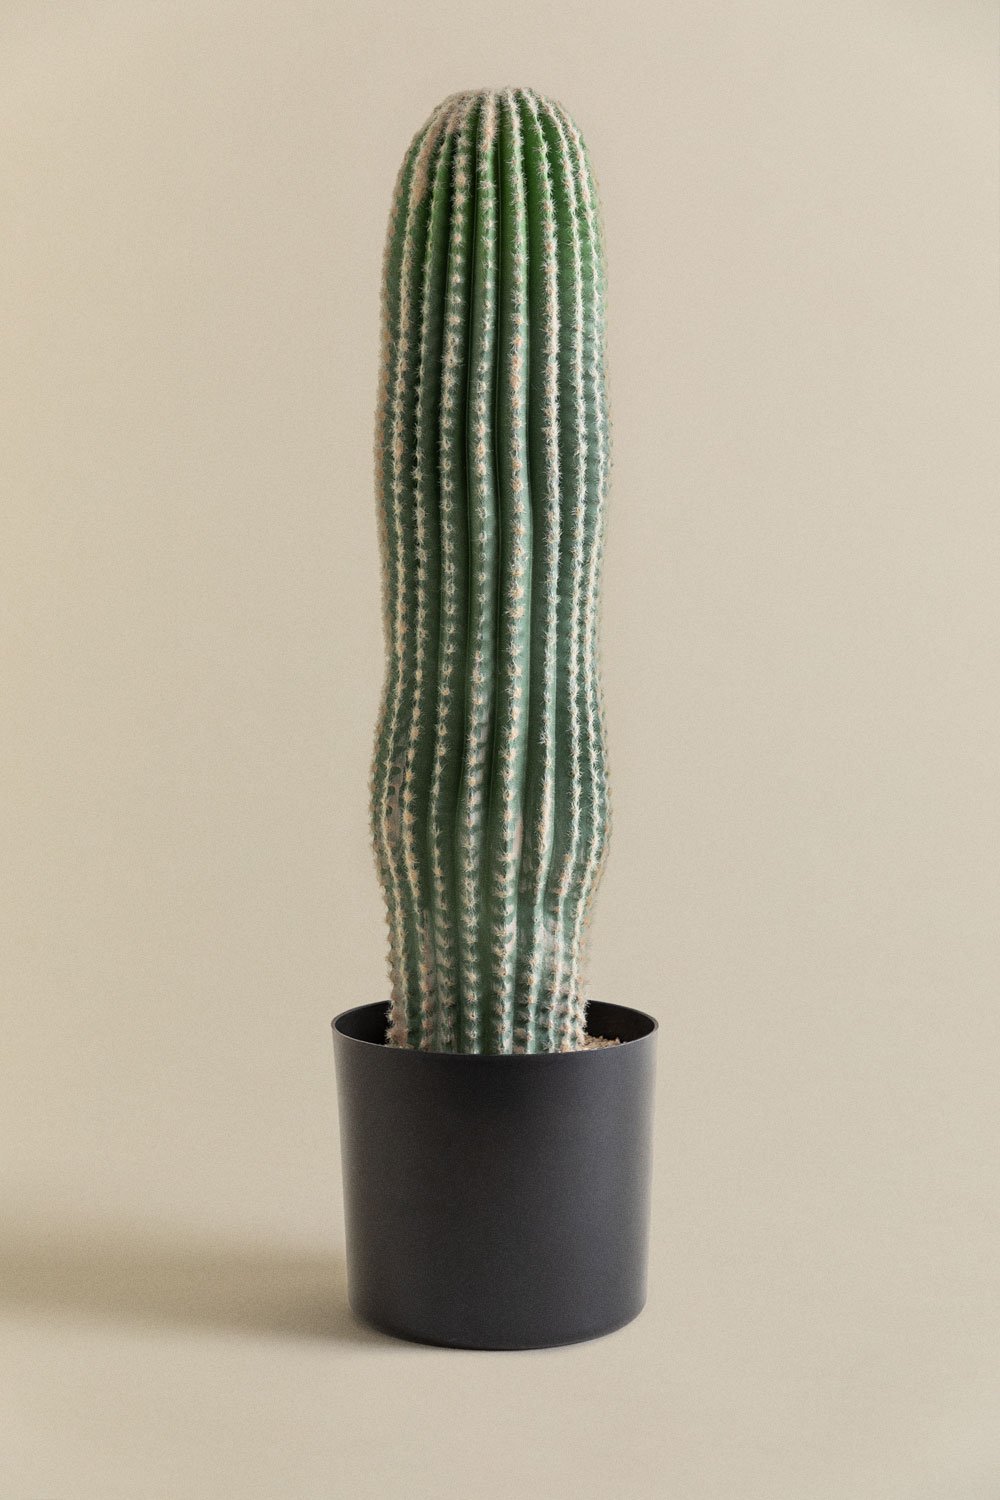 Cactus artificiale Carnegiea 72 cm, immagine della galleria 1